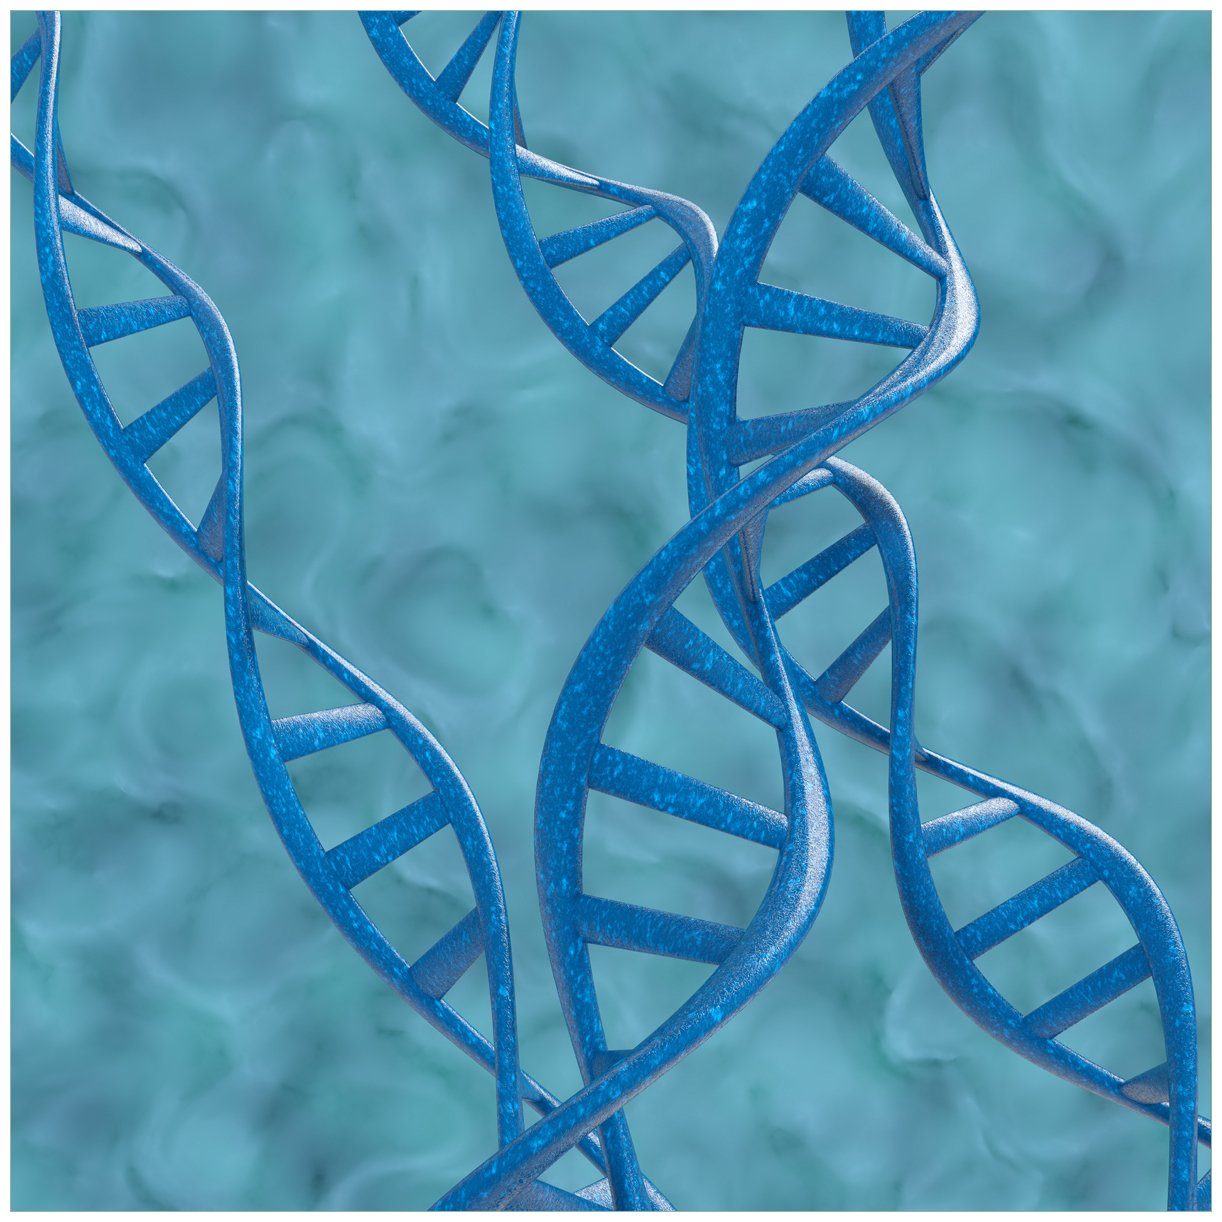 Wallario Tischplatte DNA-Strang in blau auf türkisem Hintergrund (1 St), für Ikea Lack Tisch geeignet